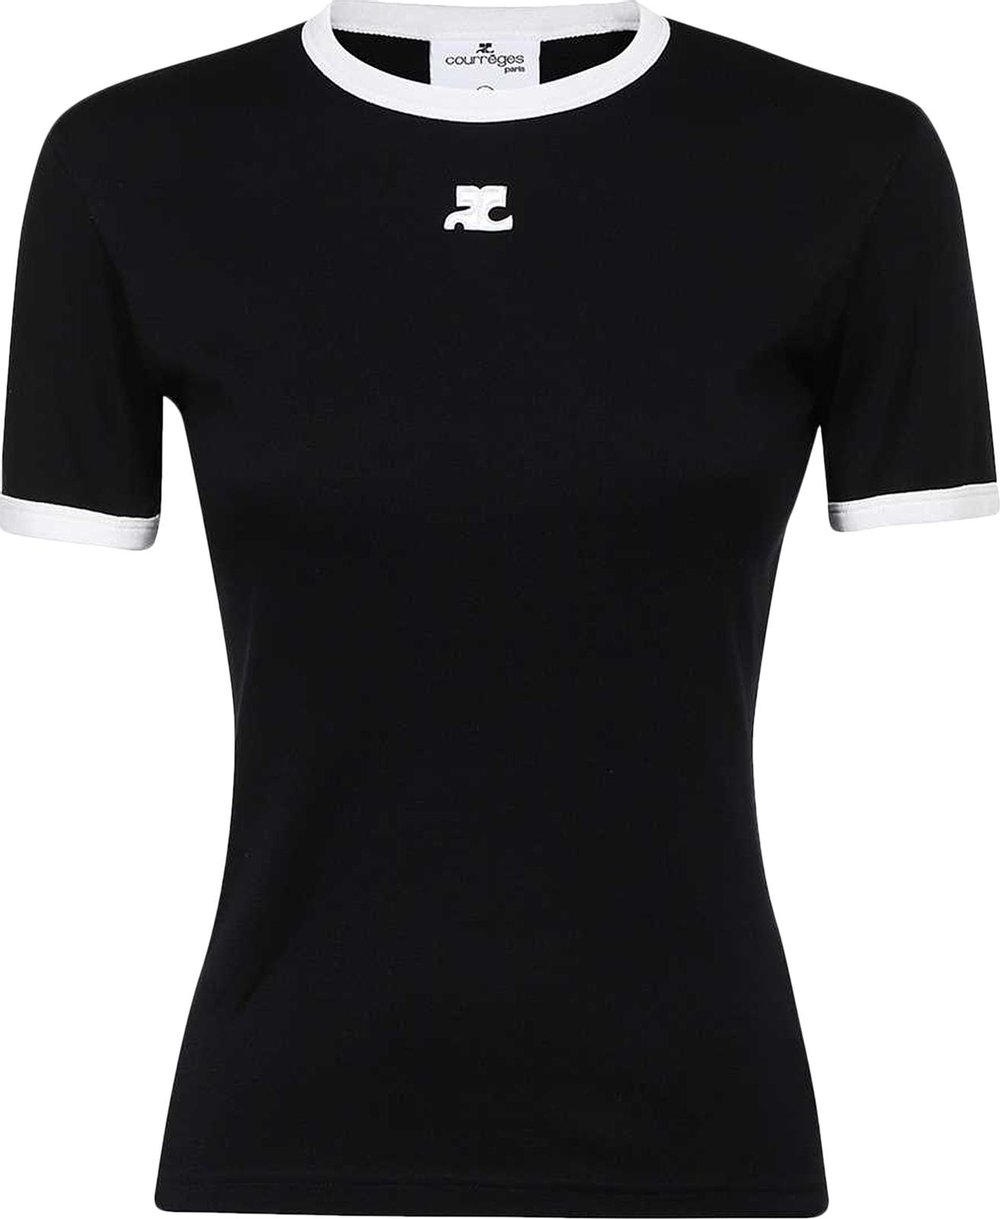 Courrèges Bumpy Contrast T-Shirt 'Black/Heritage White' | GOAT CA